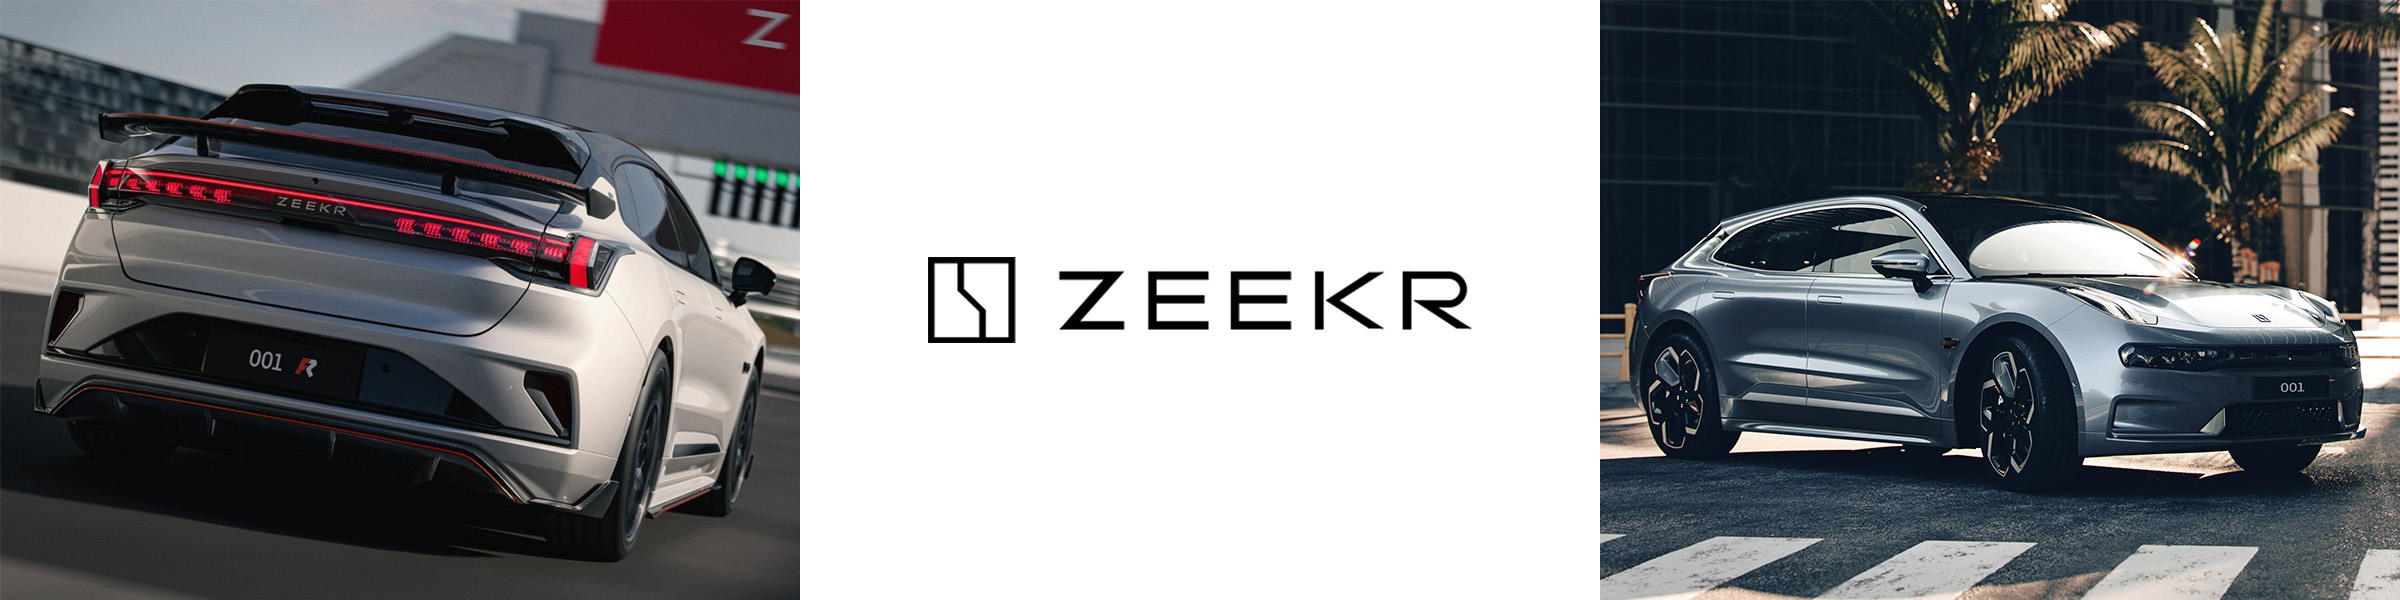 Zeekr 001 FR in white